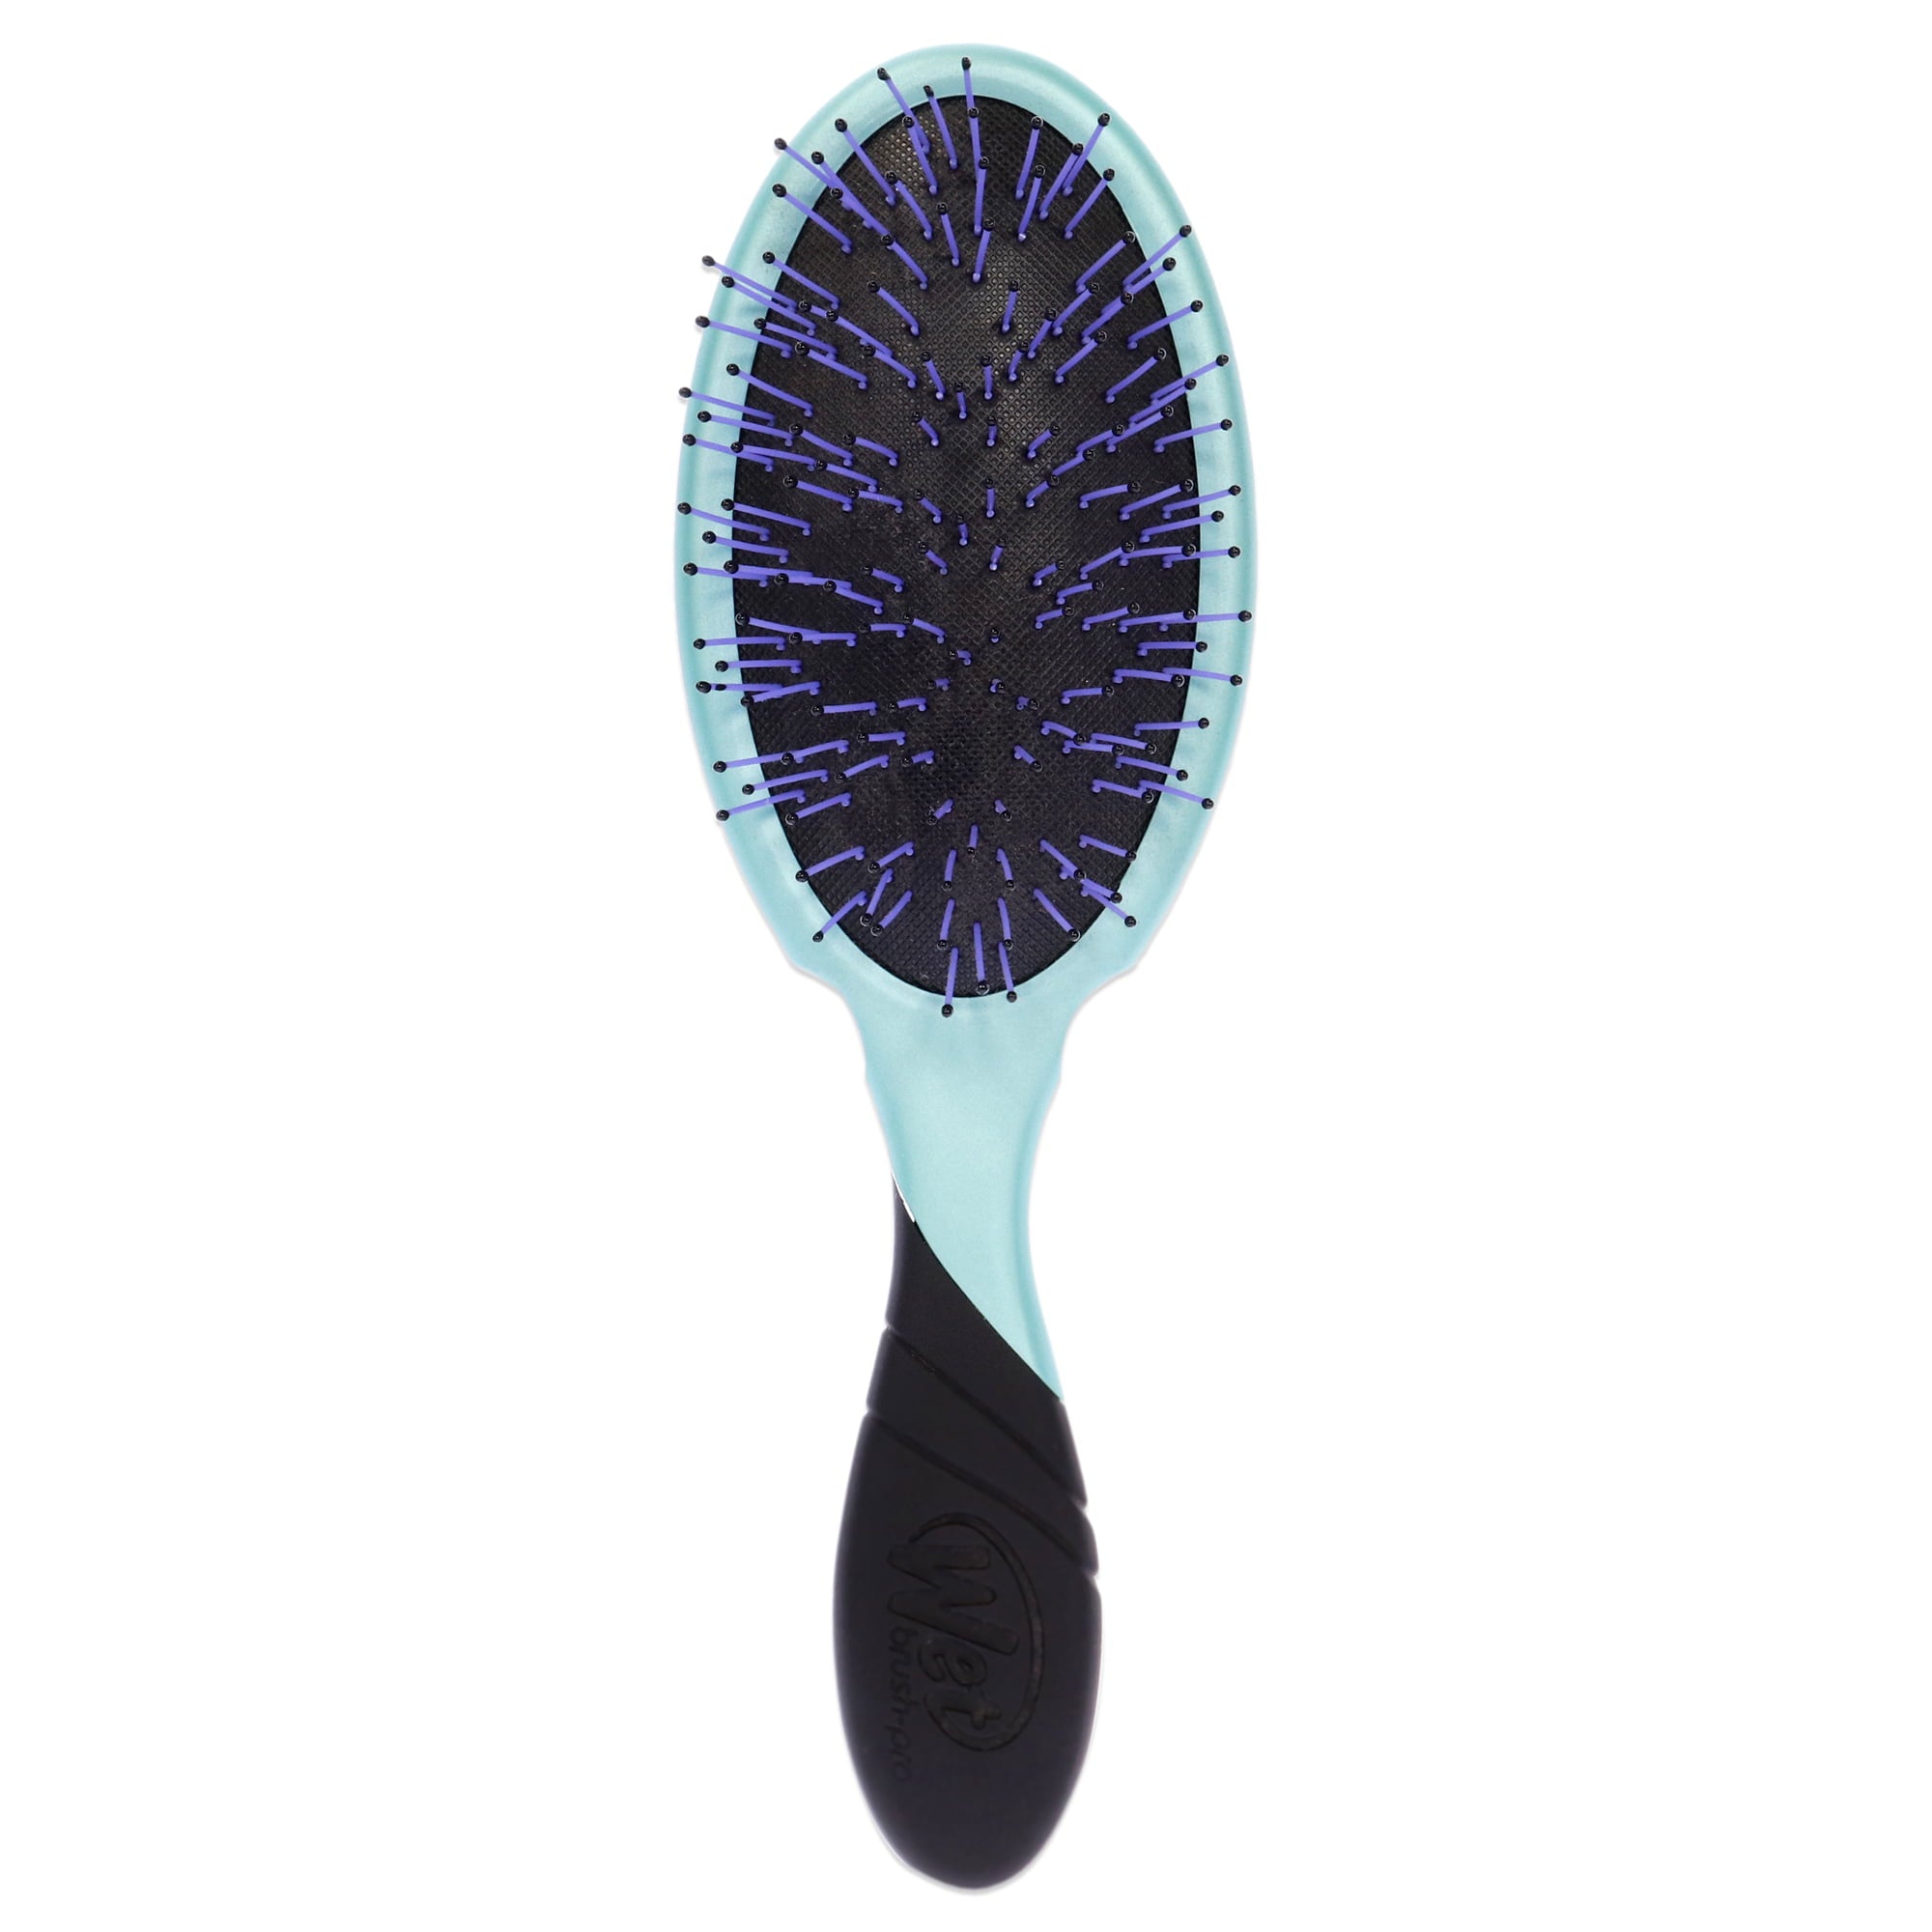 Wet Brush Pro Detangler for Thick Hair